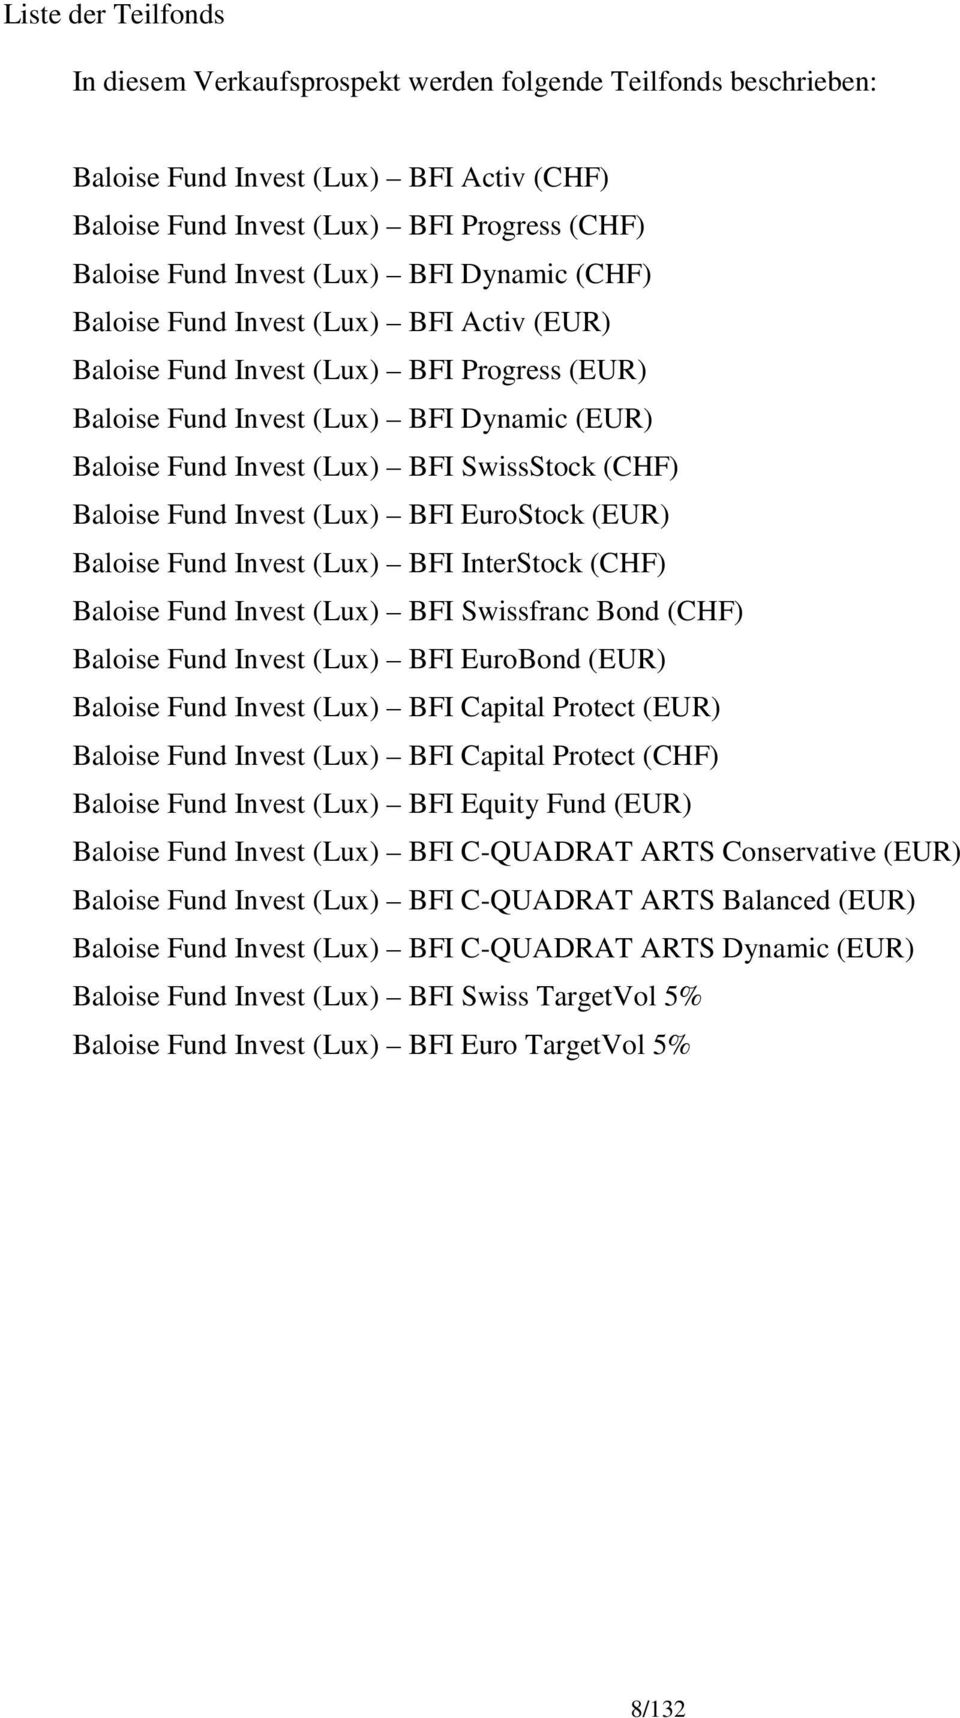 Baloise Fund Invest (Lux) BFI EuroStock (EUR) Baloise Fund Invest (Lux) BFI InterStock (CHF) Baloise Fund Invest (Lux) BFI Swissfranc Bond (CHF) Baloise Fund Invest (Lux) BFI EuroBond (EUR) Baloise